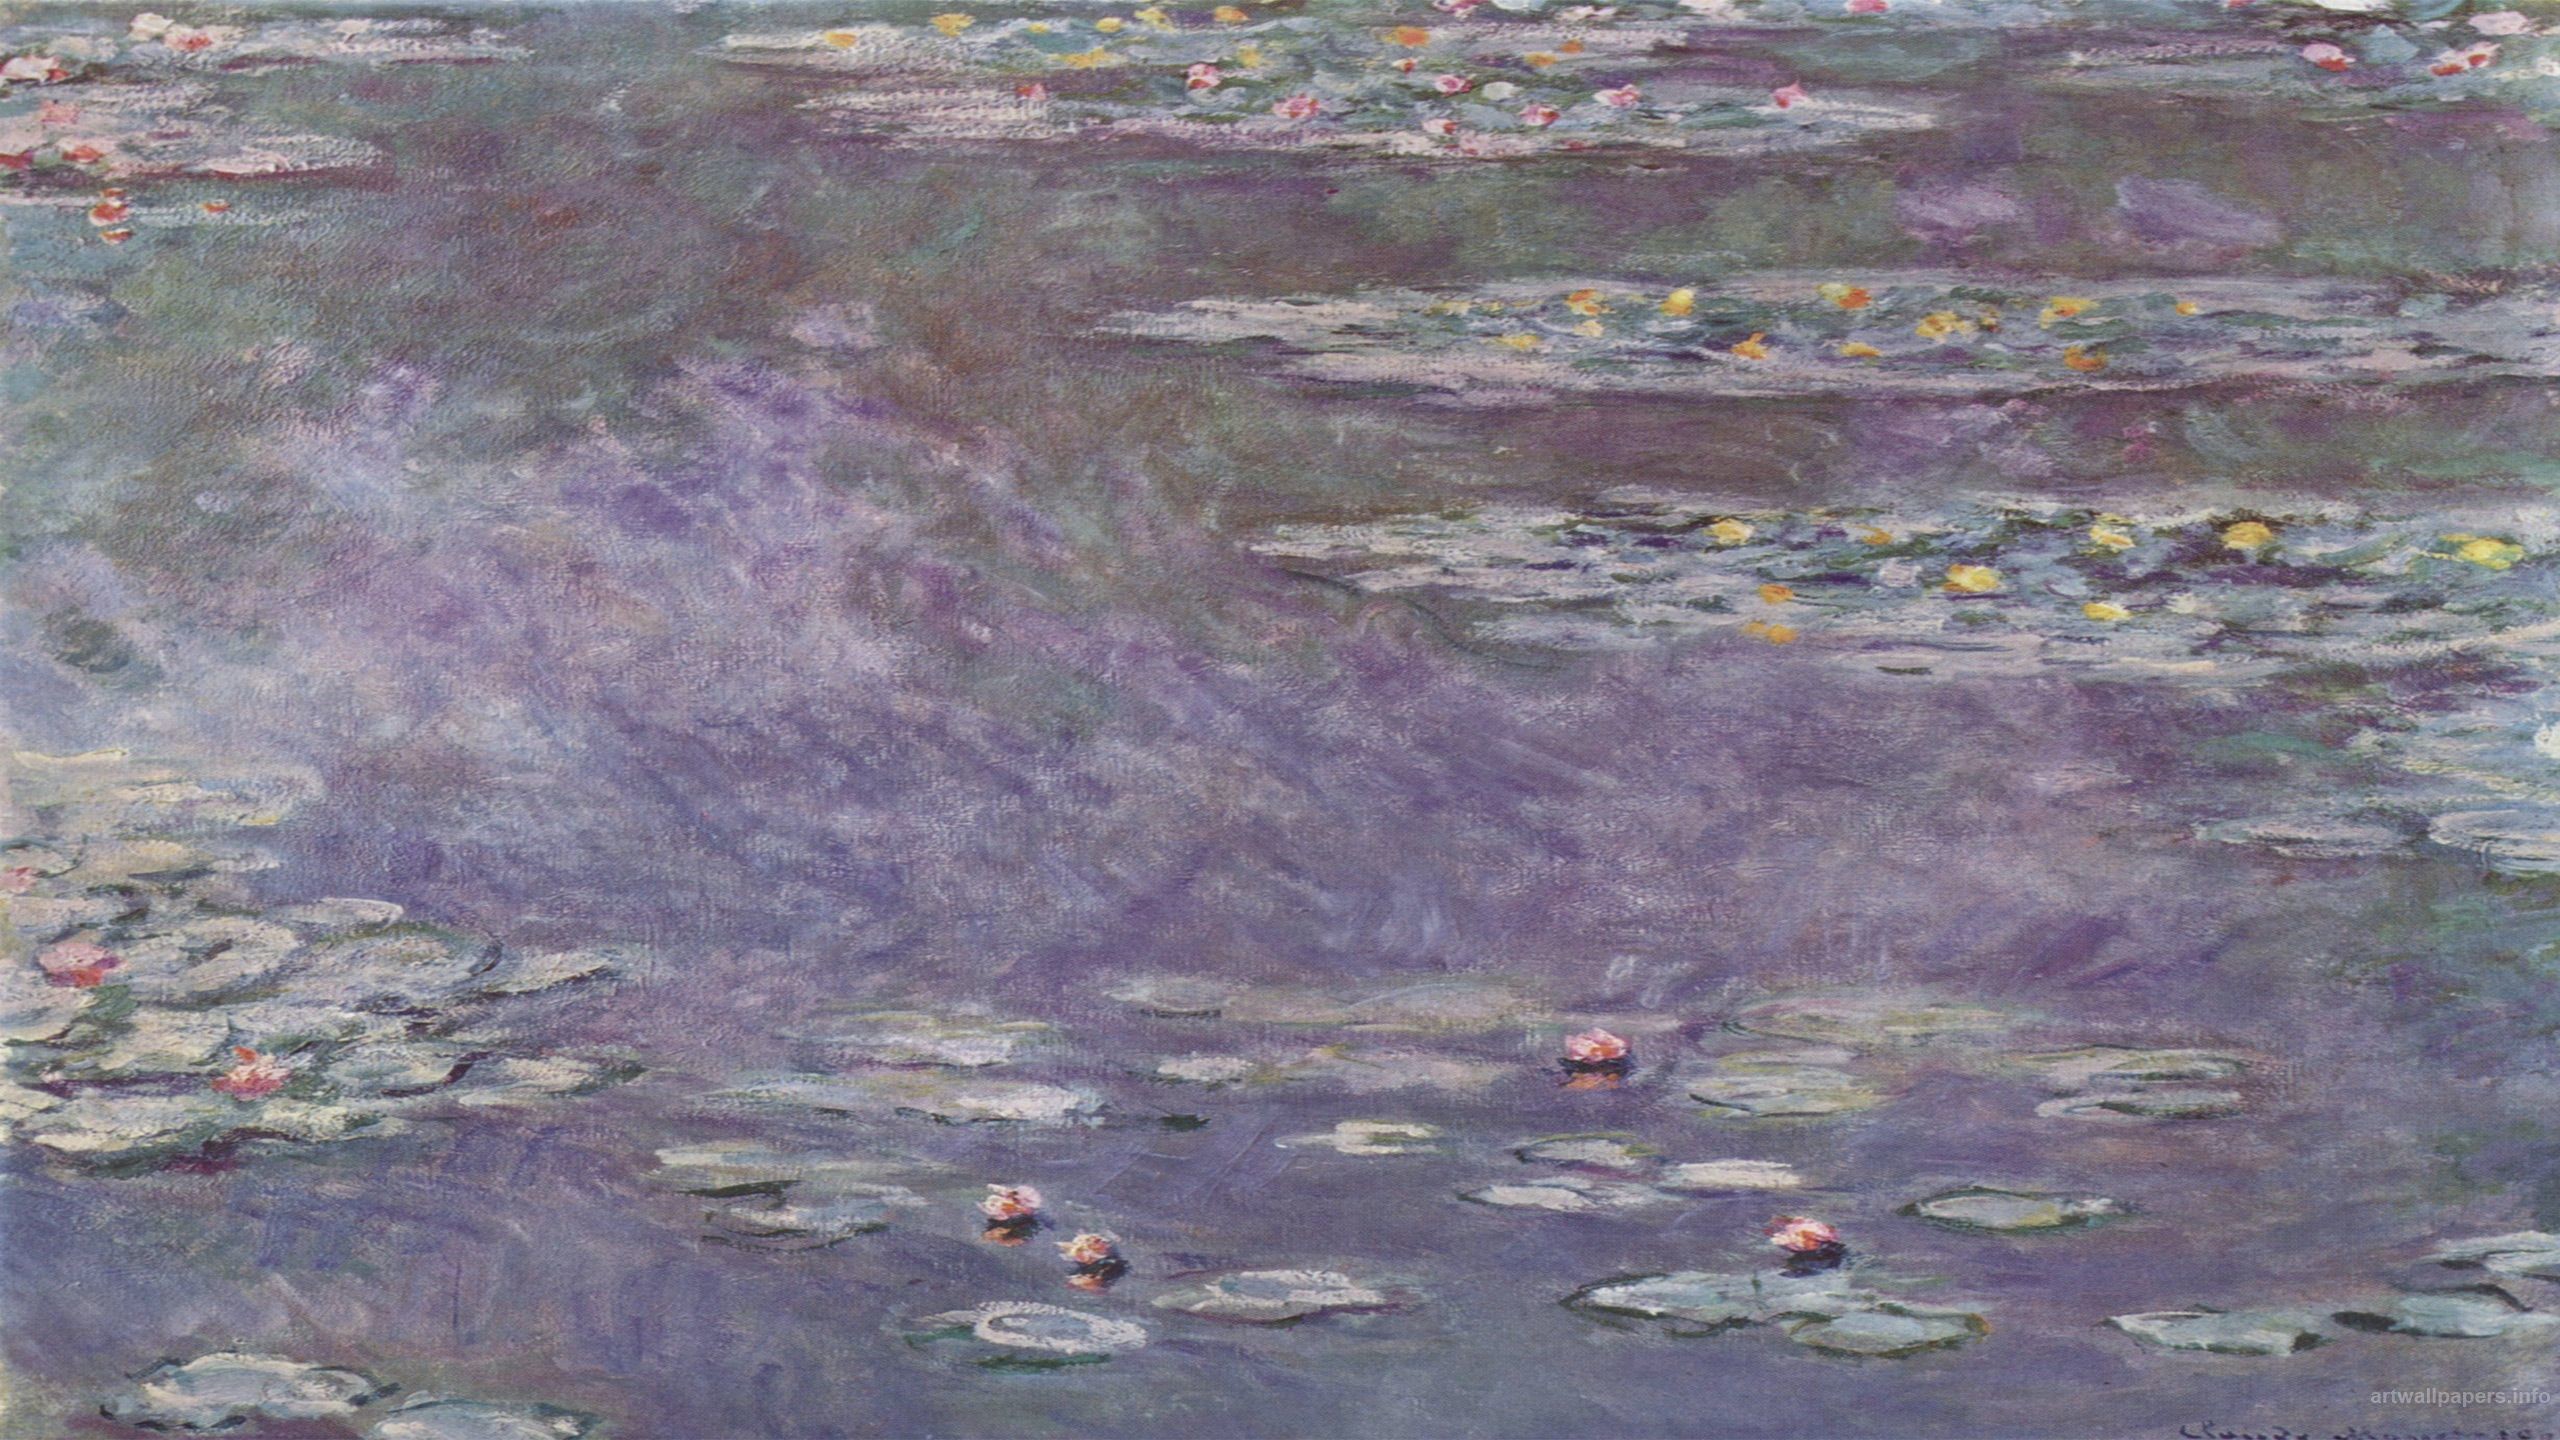 2560x1440, Claude Monet Wallpaper - Monet Purple Water Lilies - HD Wallpaper 